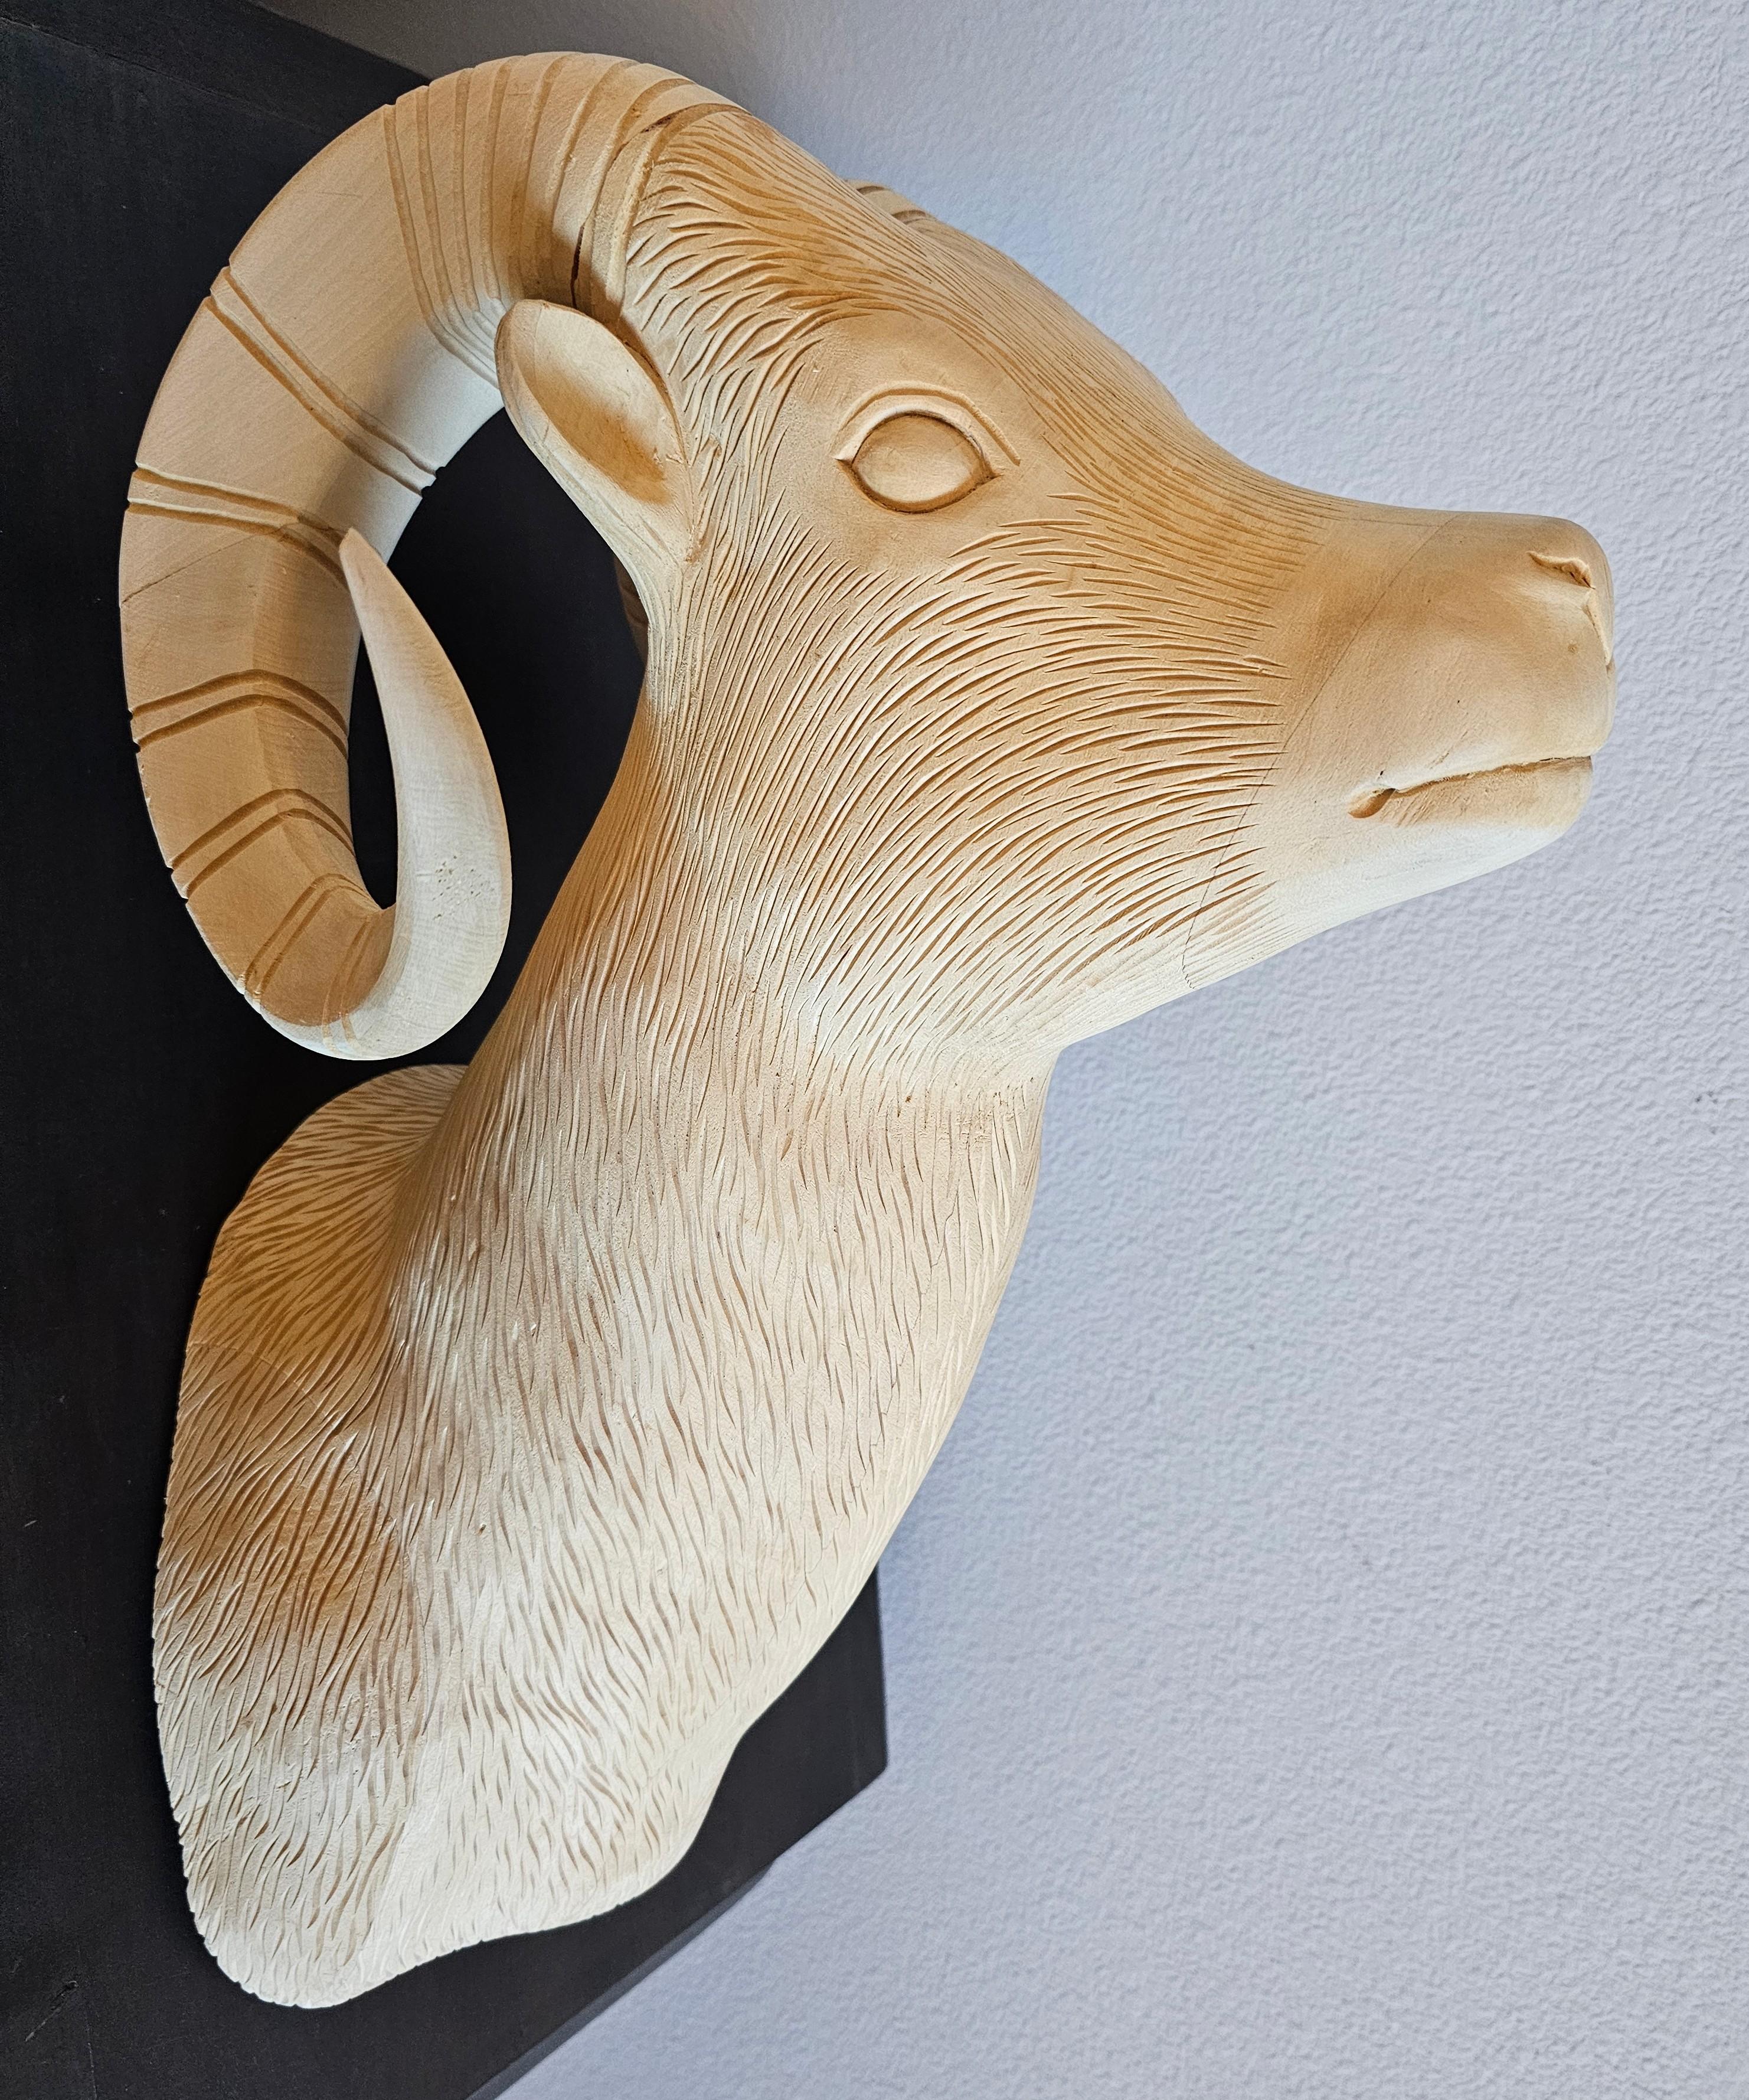 Eine große Holzschnitzerei, die einem Schafskopf mit langem Horn als Schulterstück nachempfunden ist. Außergewöhnlich gut ausgeführte naturalistische Form, entrindetes/gebleichtes helles Holz, aufwändig detailliert, um Fell, Gesichtszüge,